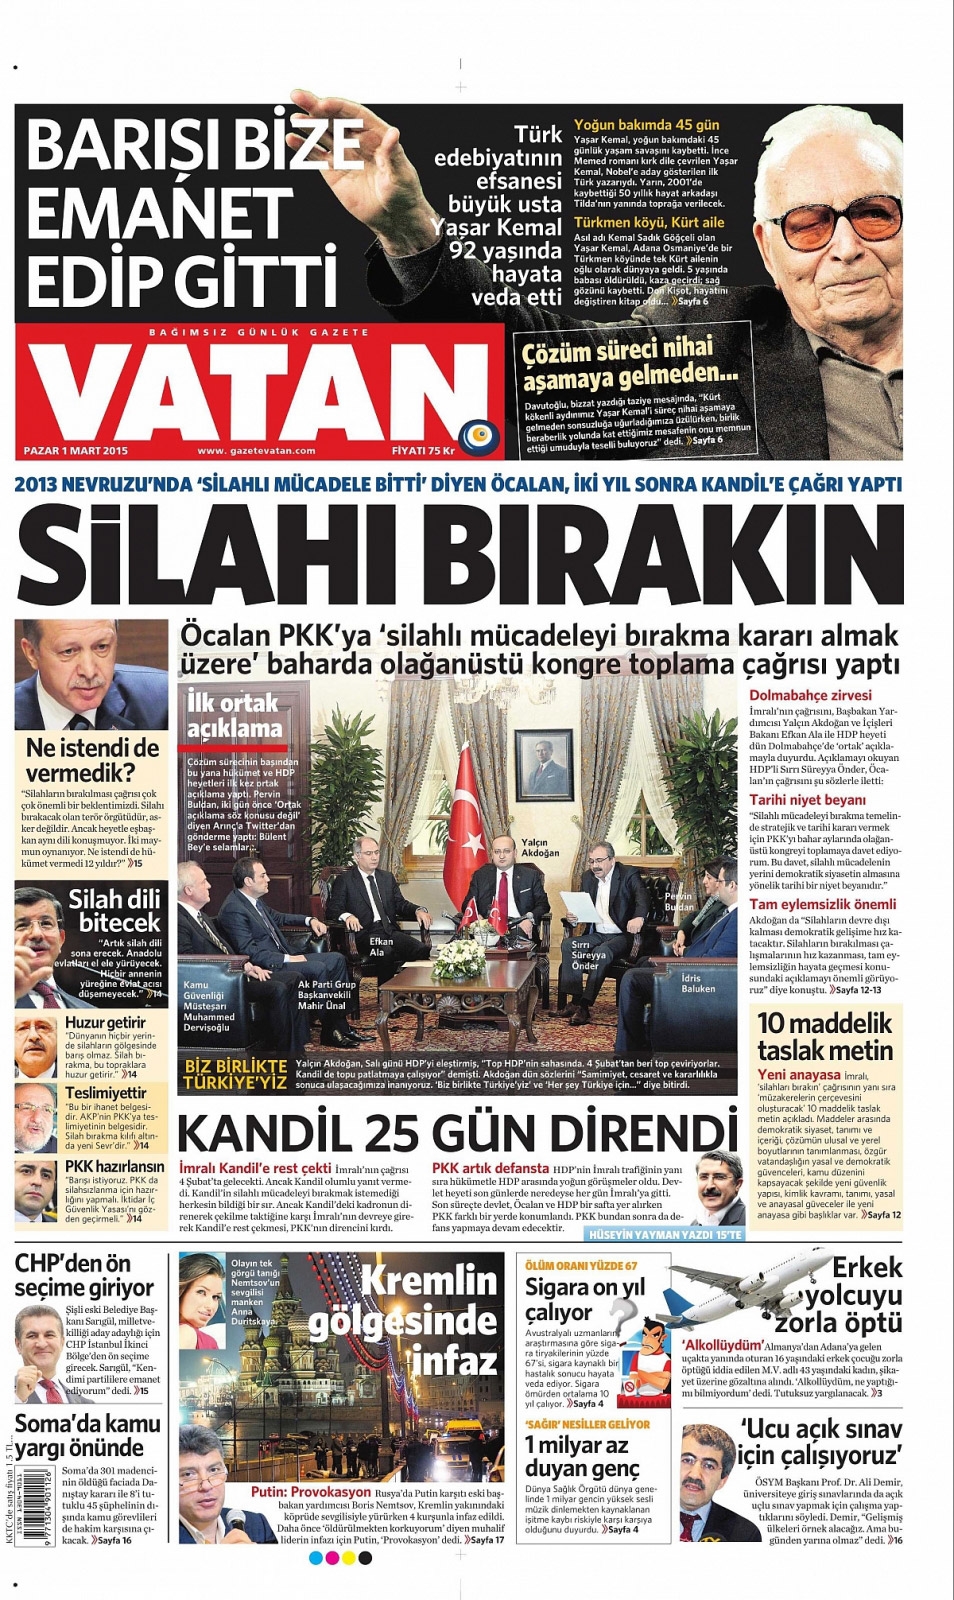 PKK Mayın Döşerken Medya Milleti Böyle Uyuttu 16